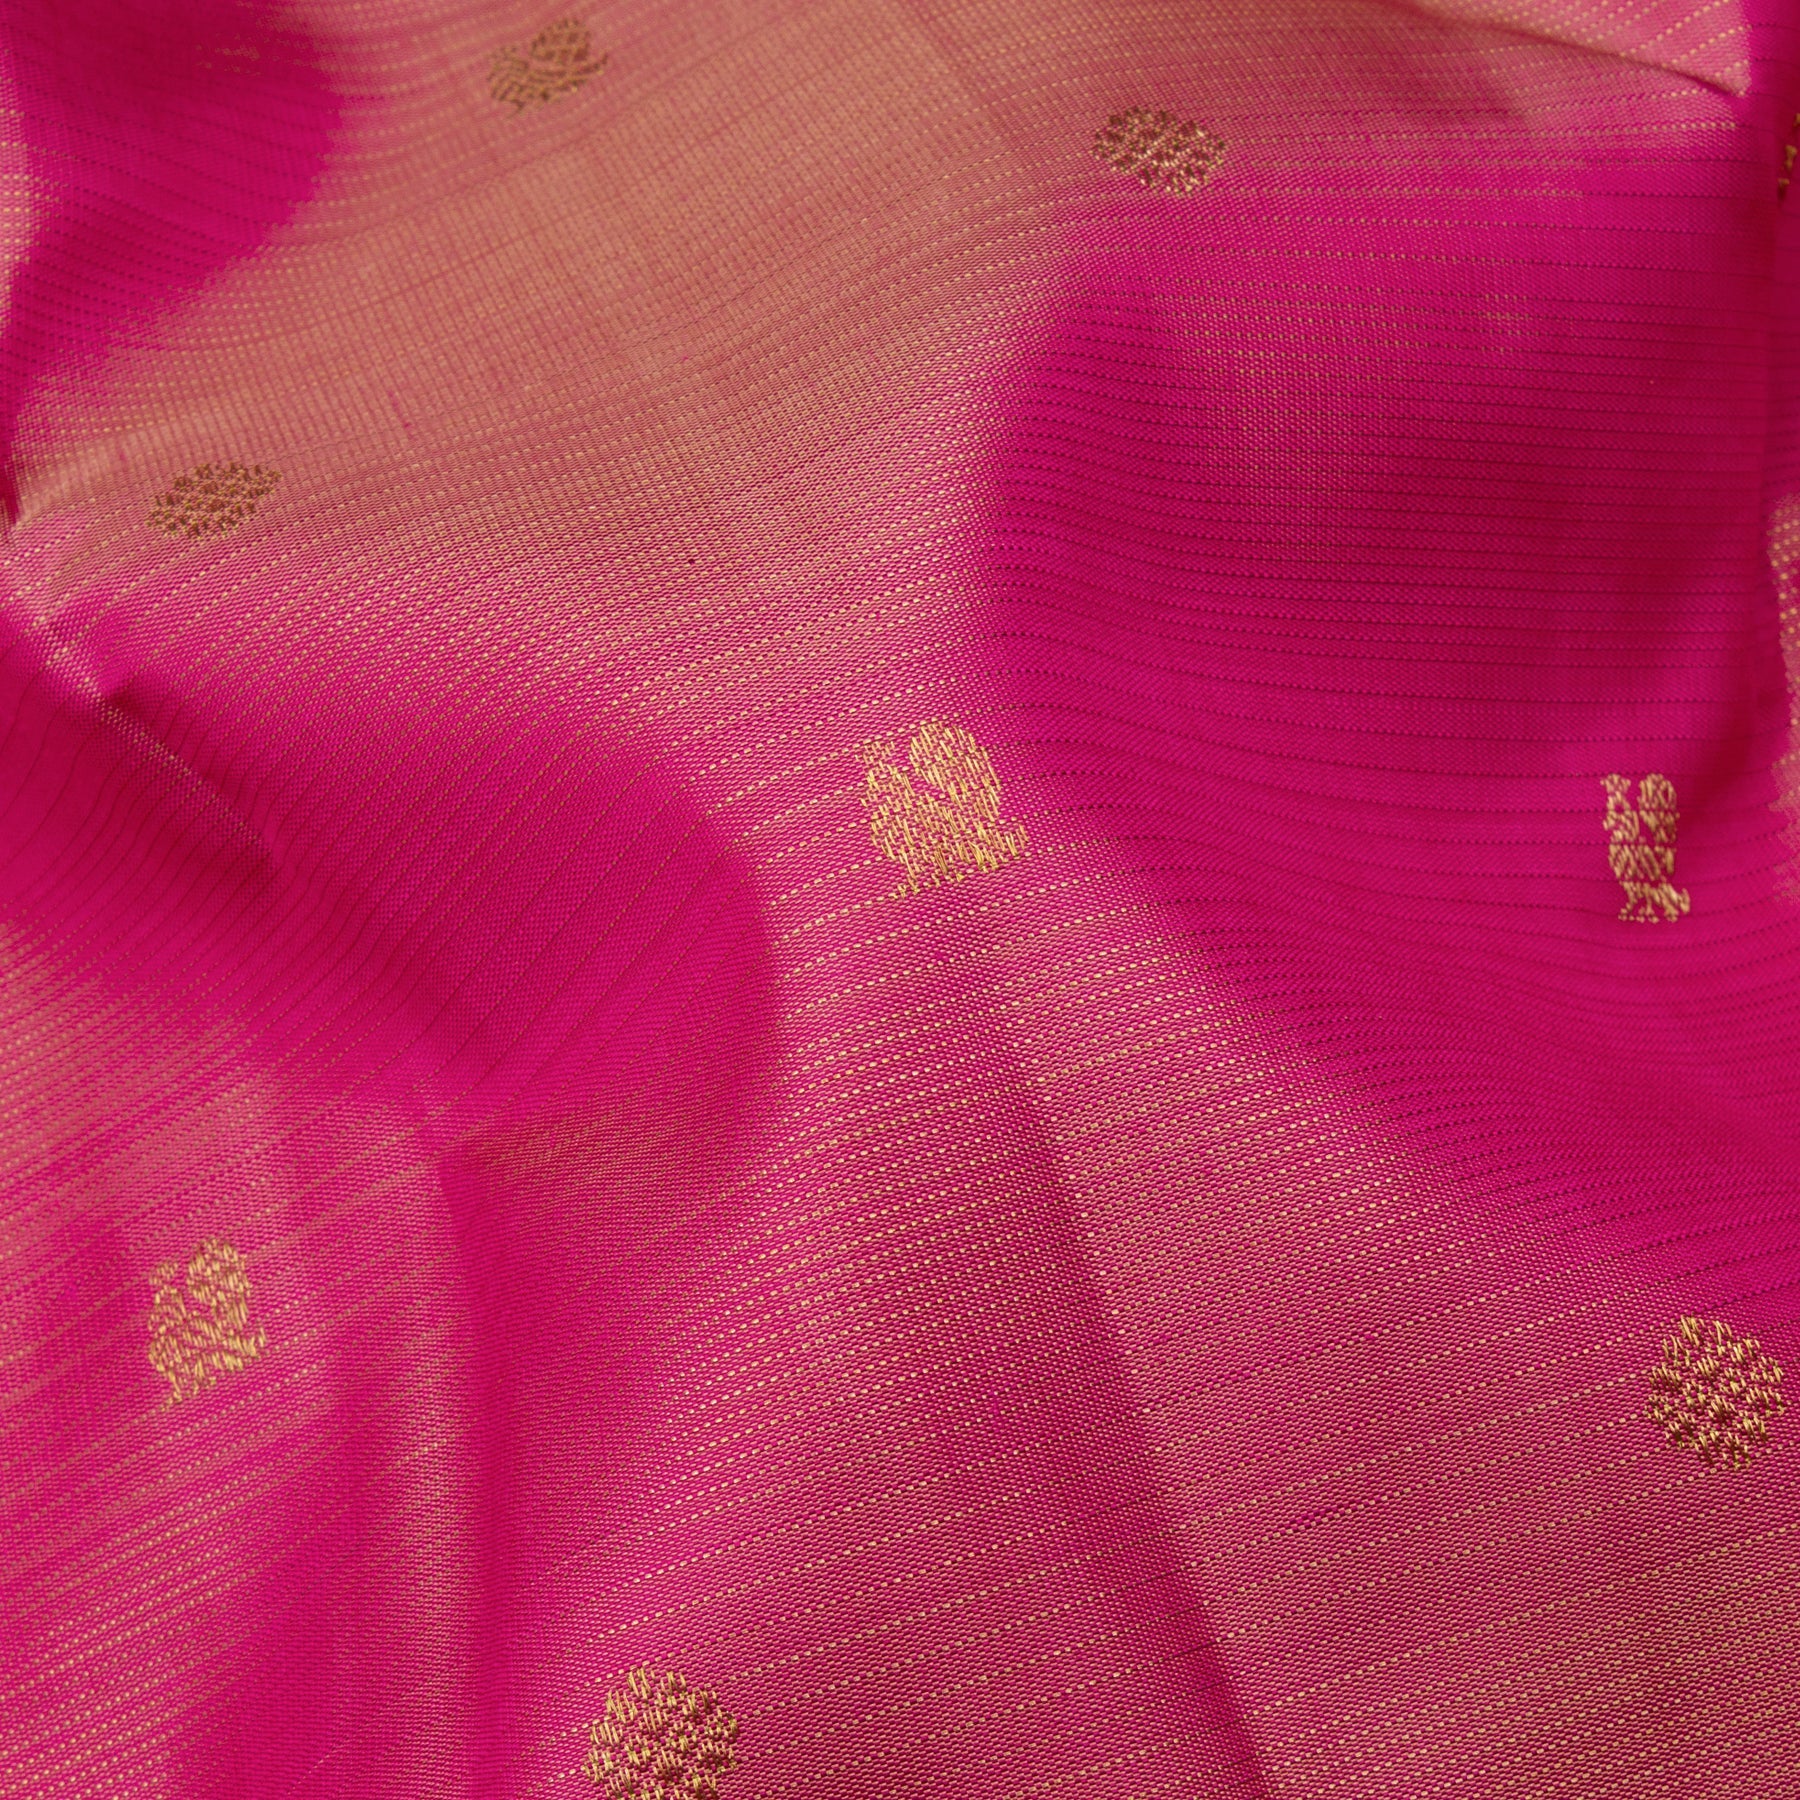 Kanakavalli Kanjivaram Silk Sari 23-599-HS001-14398 - Fabric View